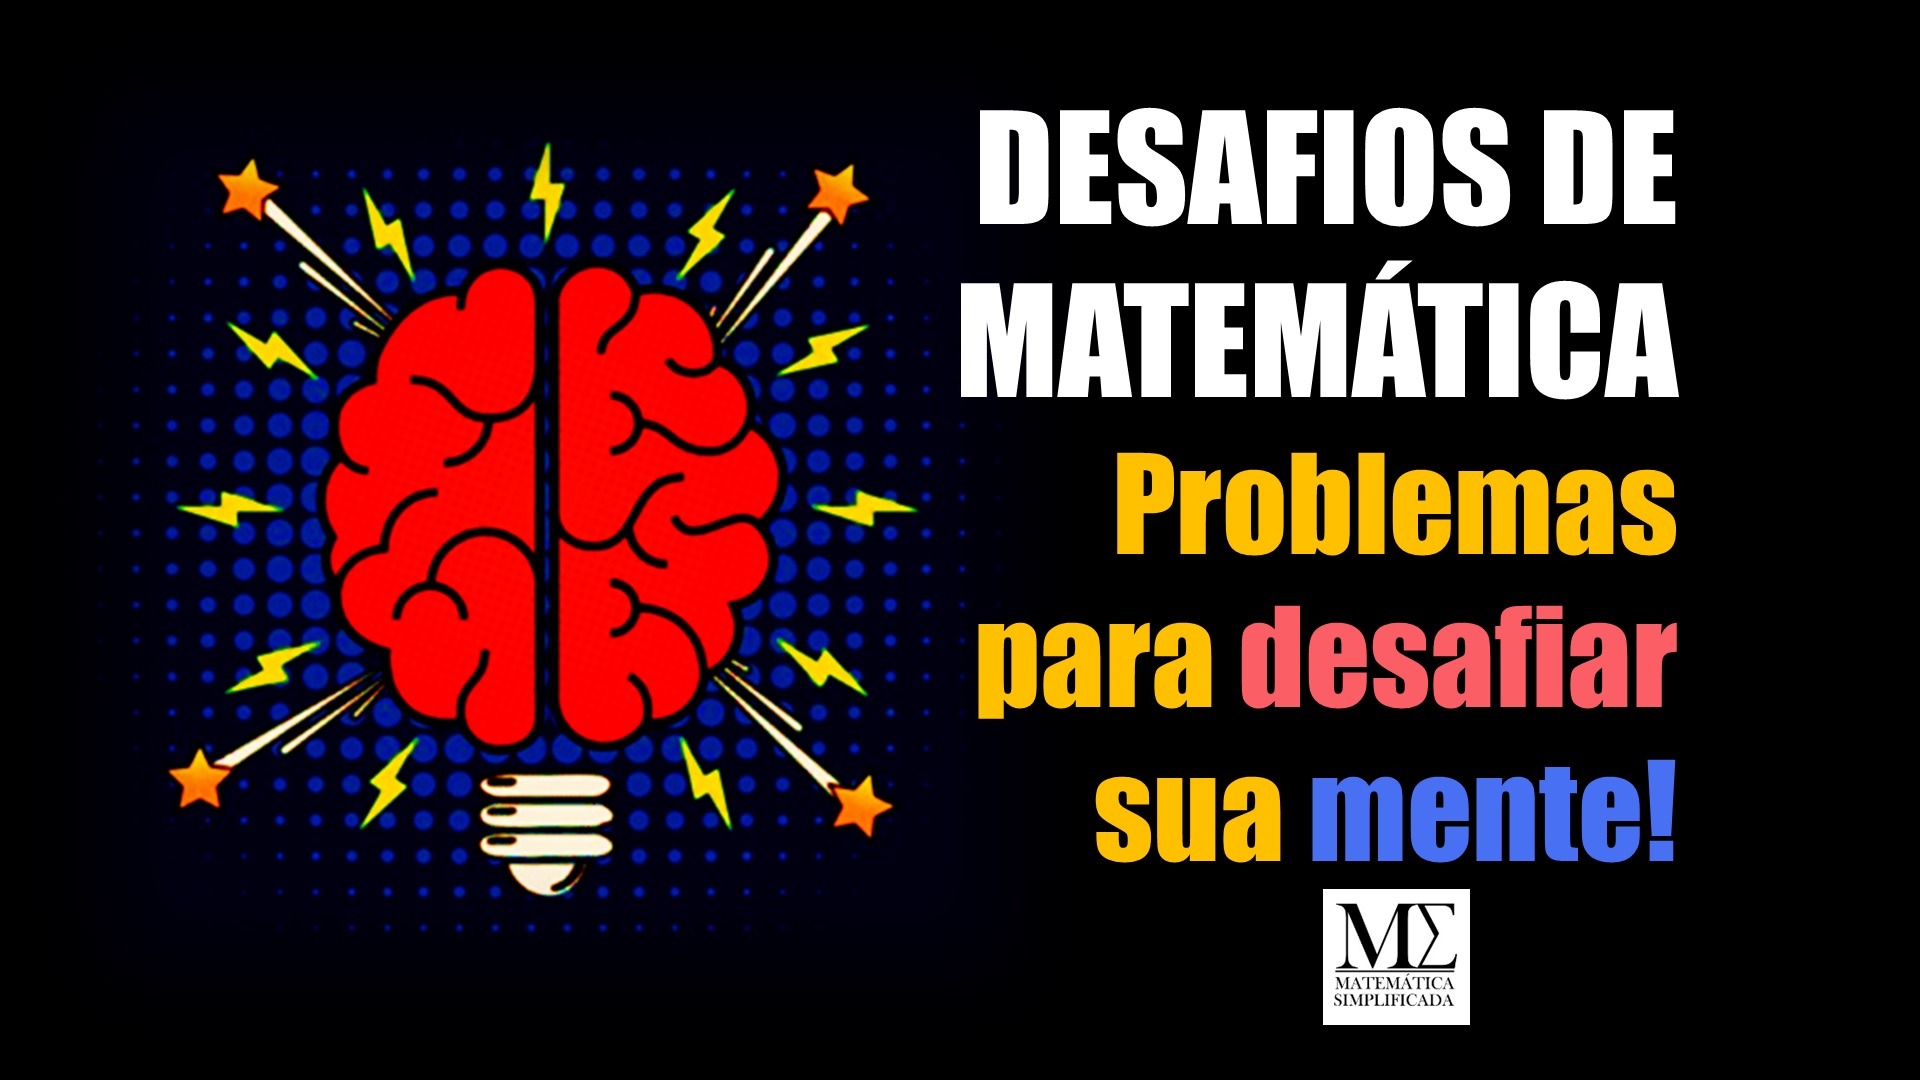 Problema de matemática com frutas faz sucesso nas redes sociais  Problemas  de matemática, Desafios de matemática, Matemática simples